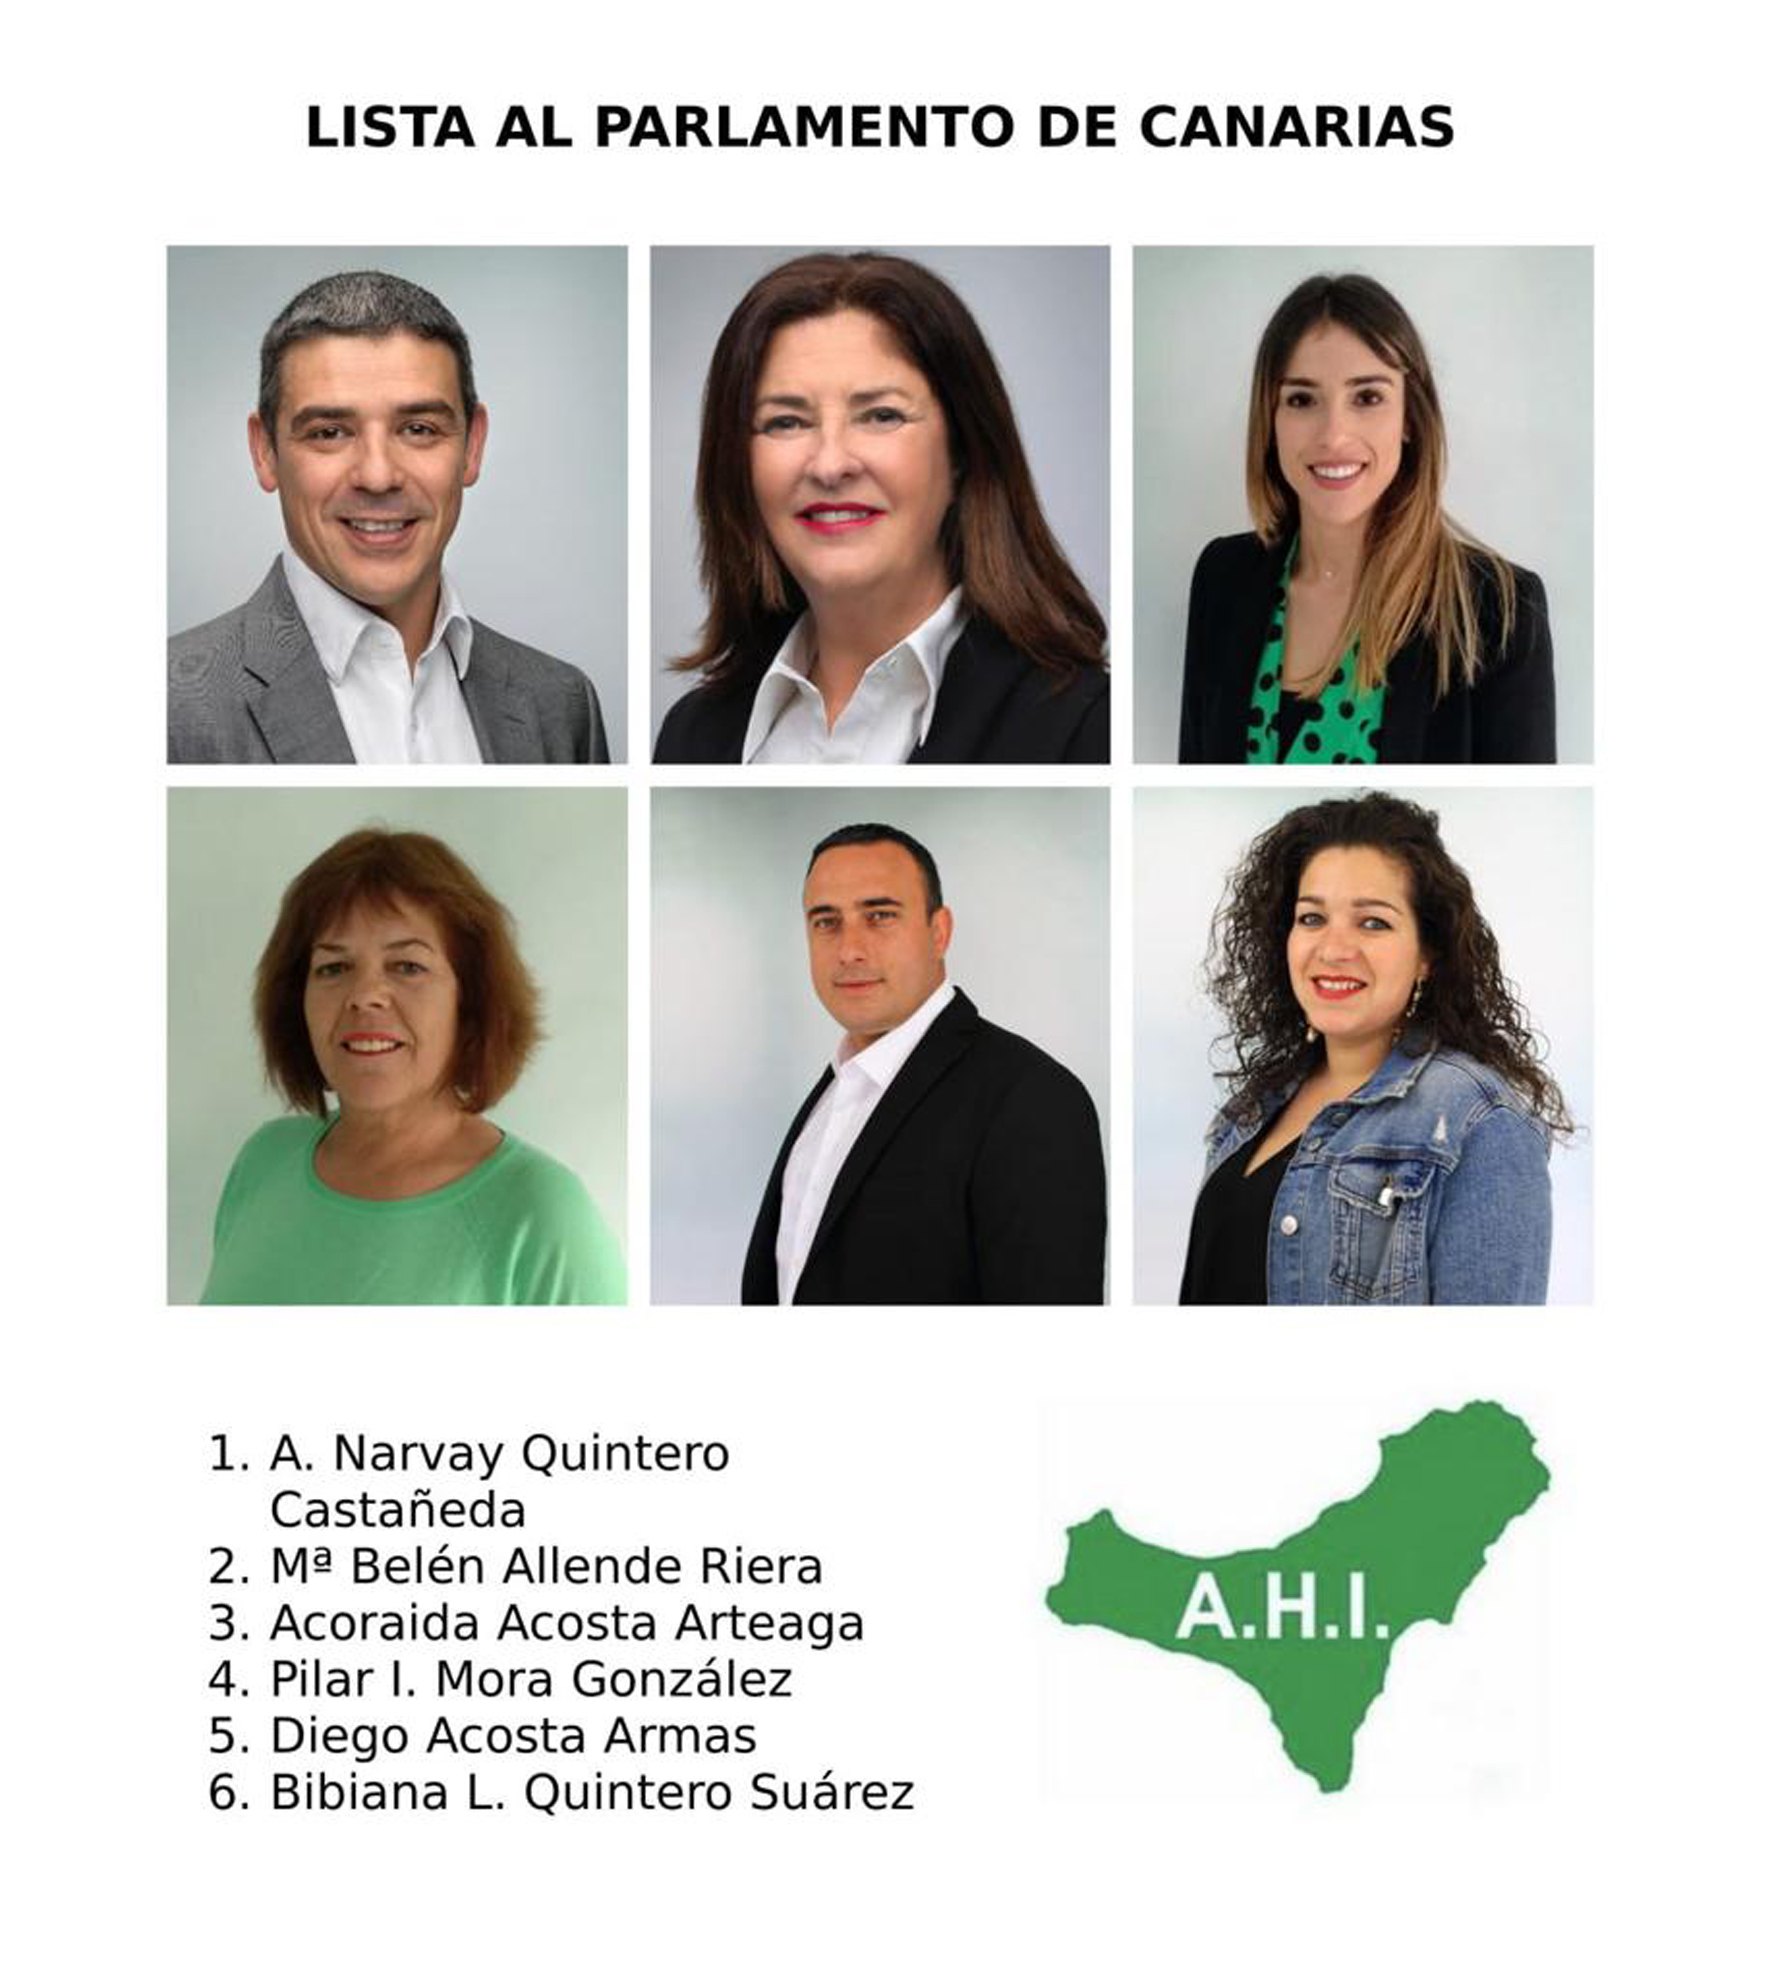 AHI Parlamento de Canarias 2019